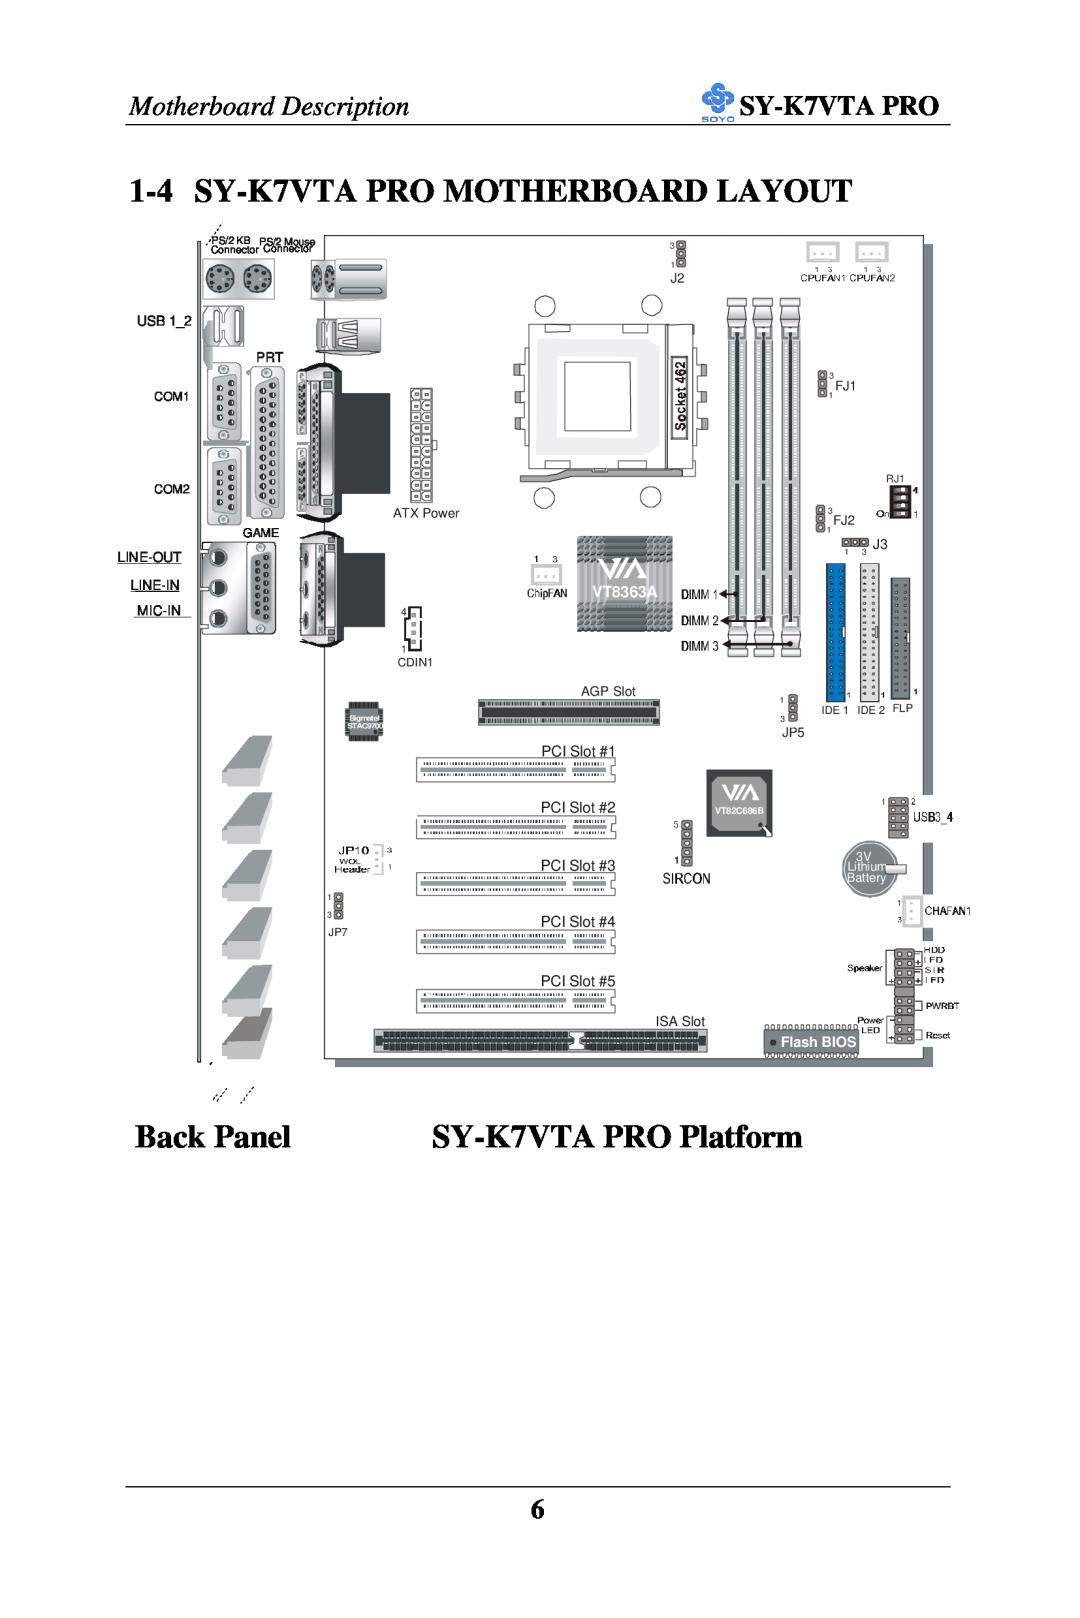 SOYO SY-K7VTA PRO MOTHERBOARD LAYOUT, Back Panel, SY-K7VTA PRO Platform, Motherboard Description, VT8363A, PCI Slot #1 